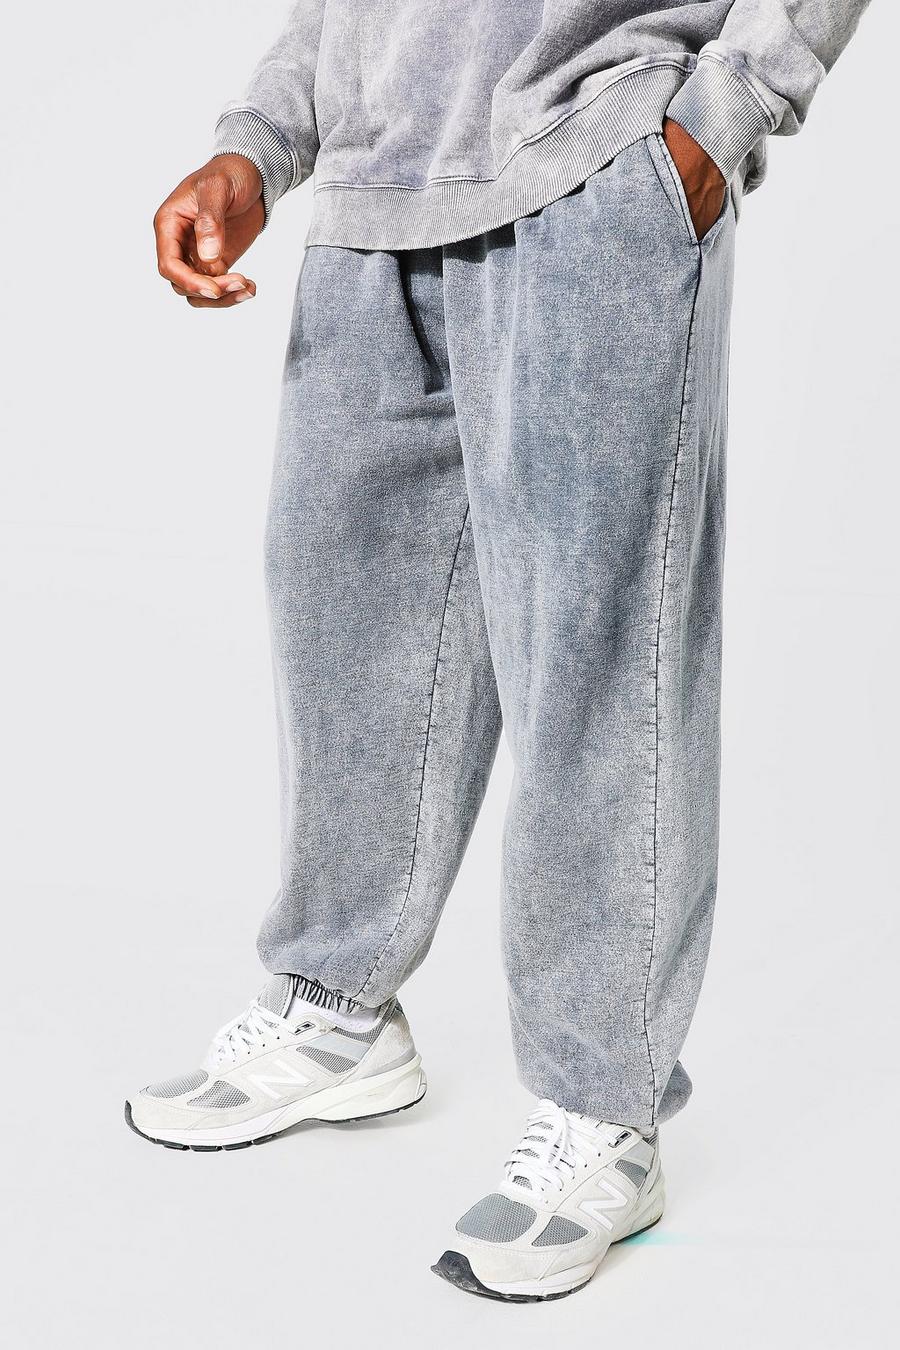 Pantaloni tuta oversize slavati, Charcoal gris image number 1